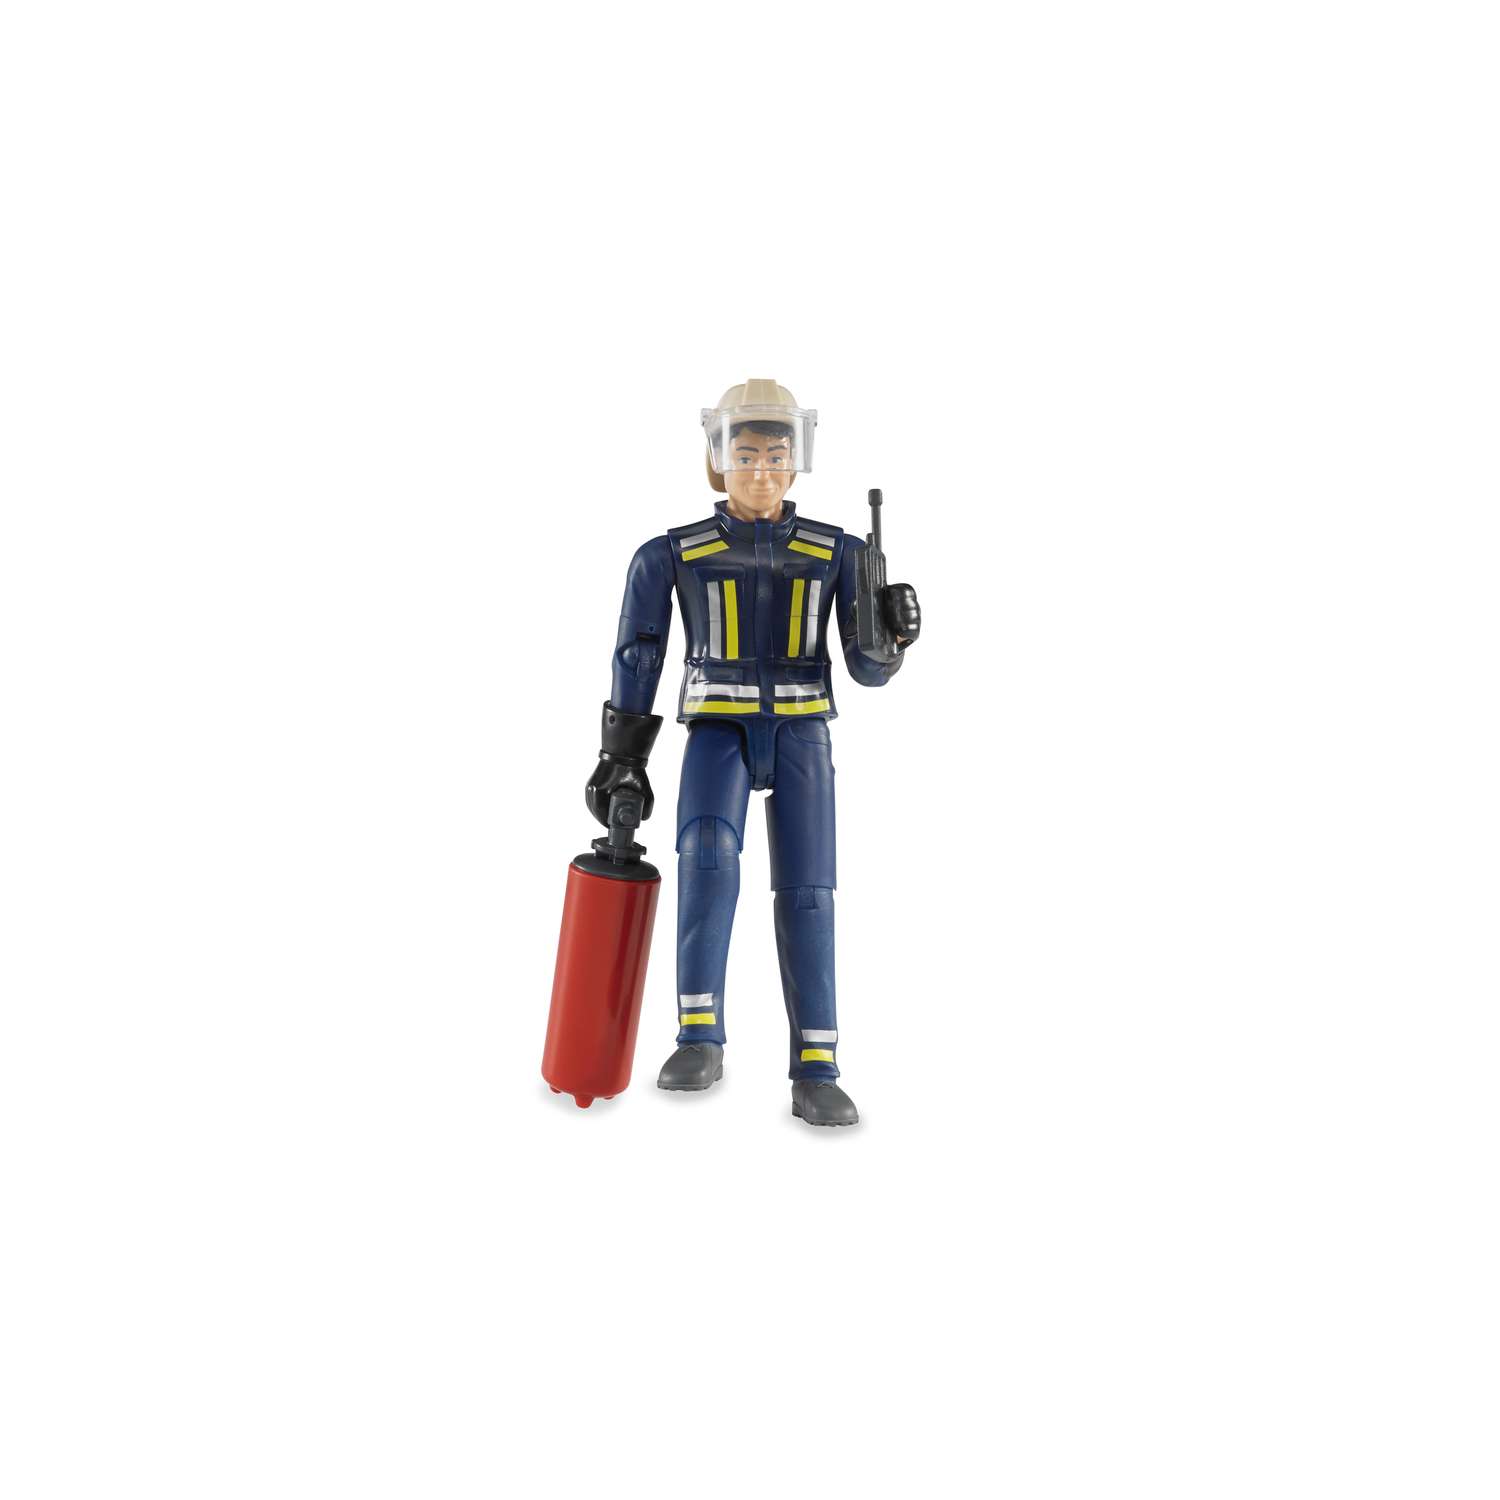 Игрушка BRUDER Фигурка пожарного 107мм с огнетушителем и рацией - фото 1